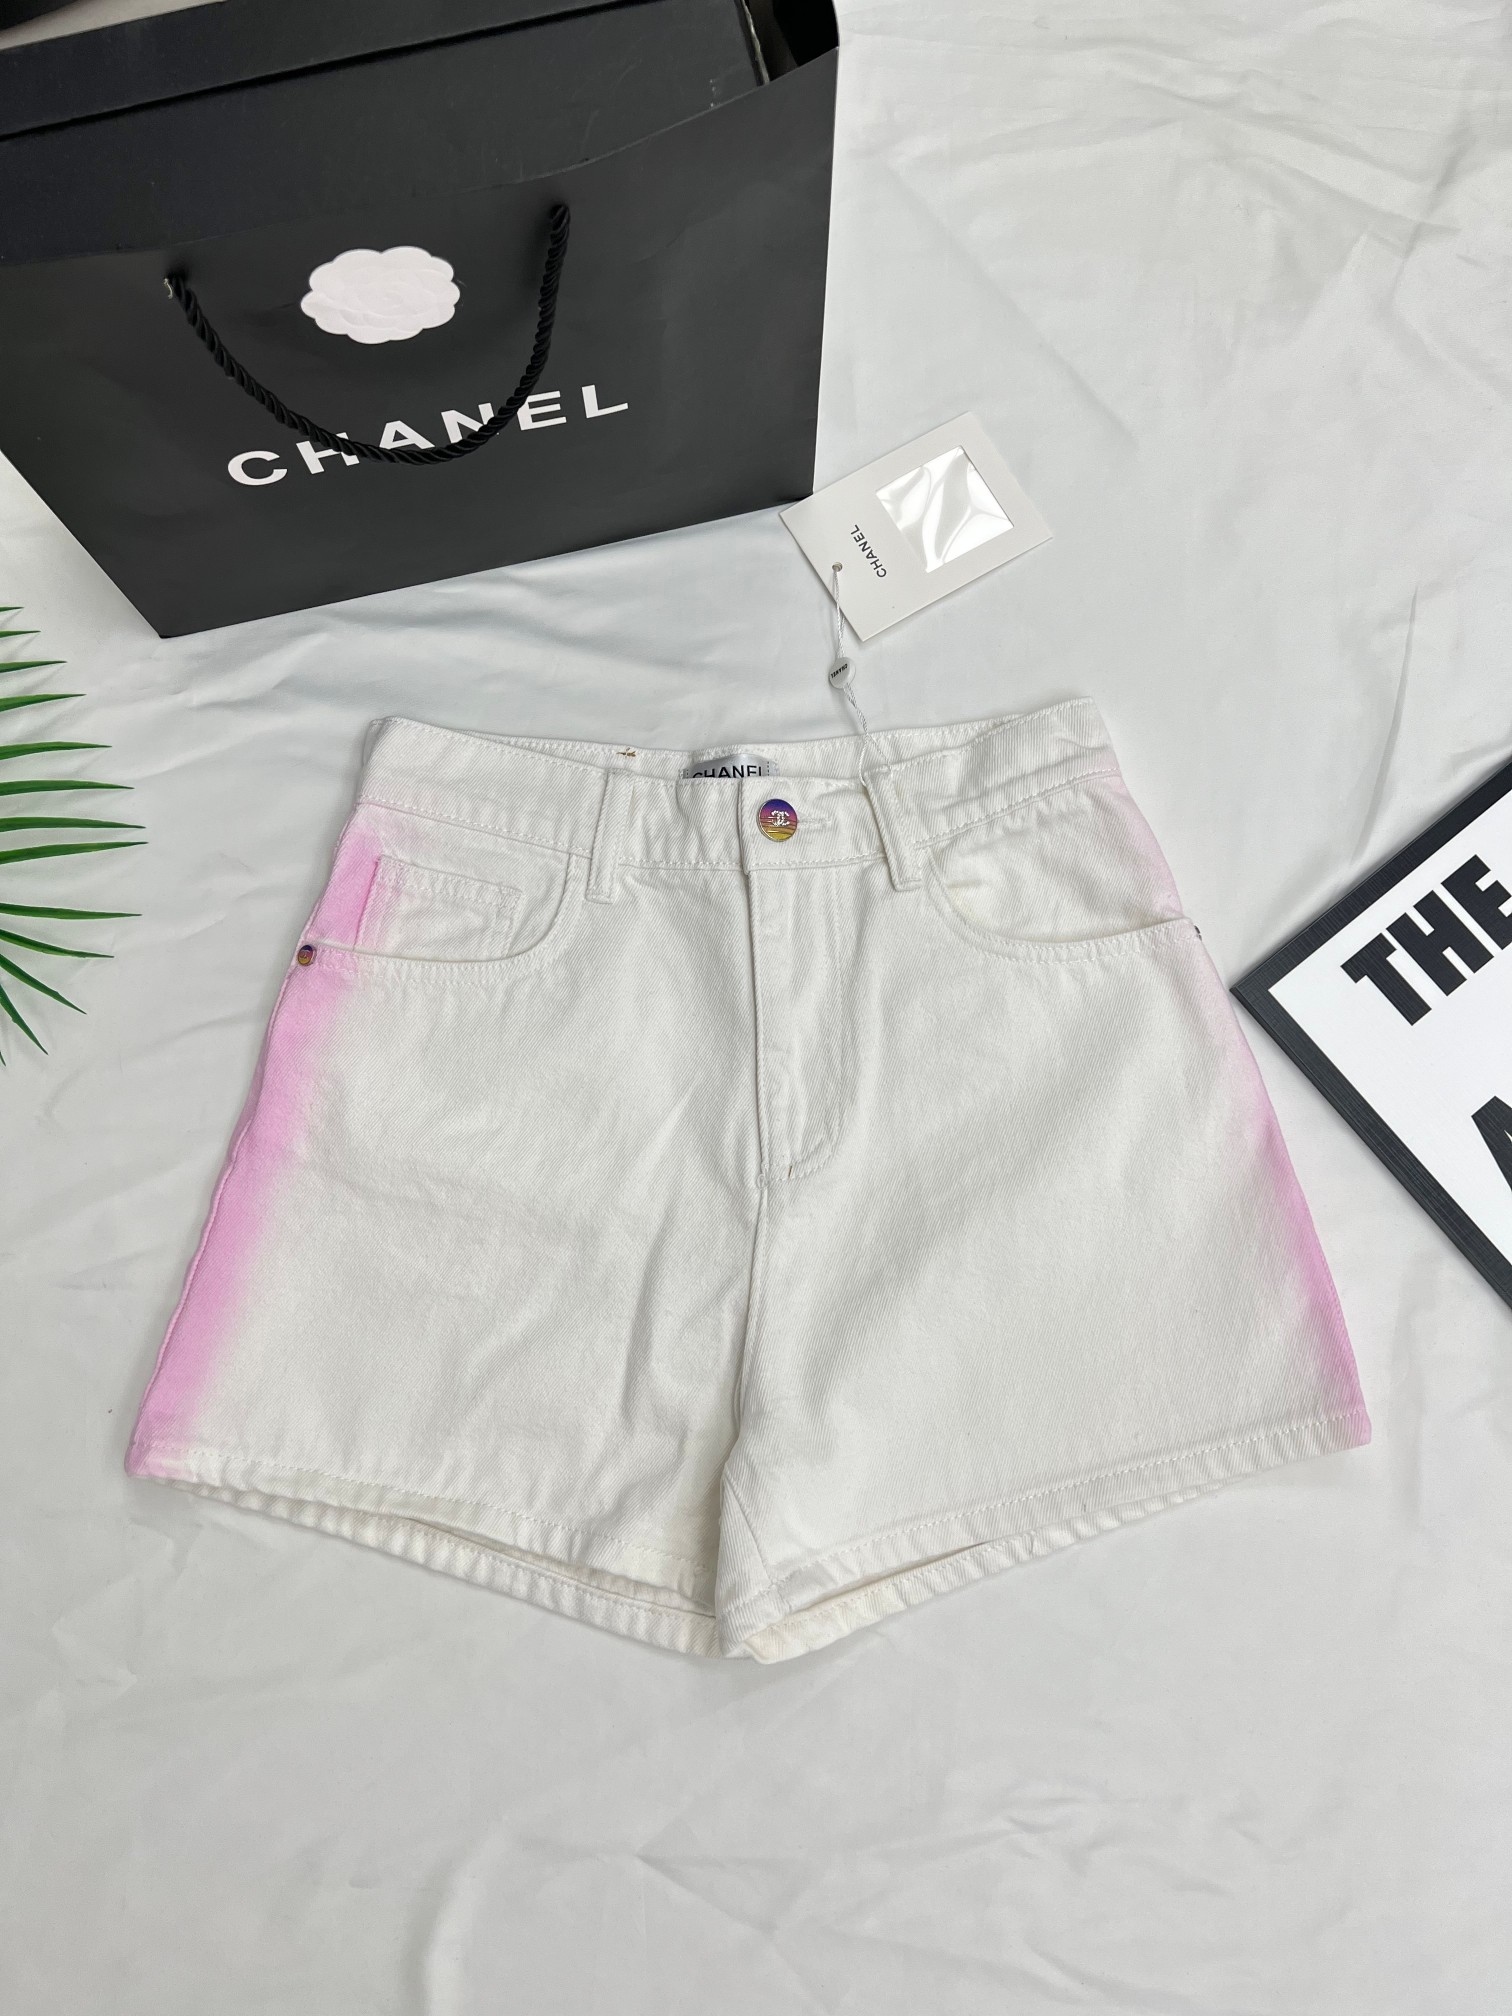 AAAA personalizar
 Chanel Ropa Vaqueros Pantalones cortos Calidad perfecta
 Blanco Algodón bruto azul Colección de verano